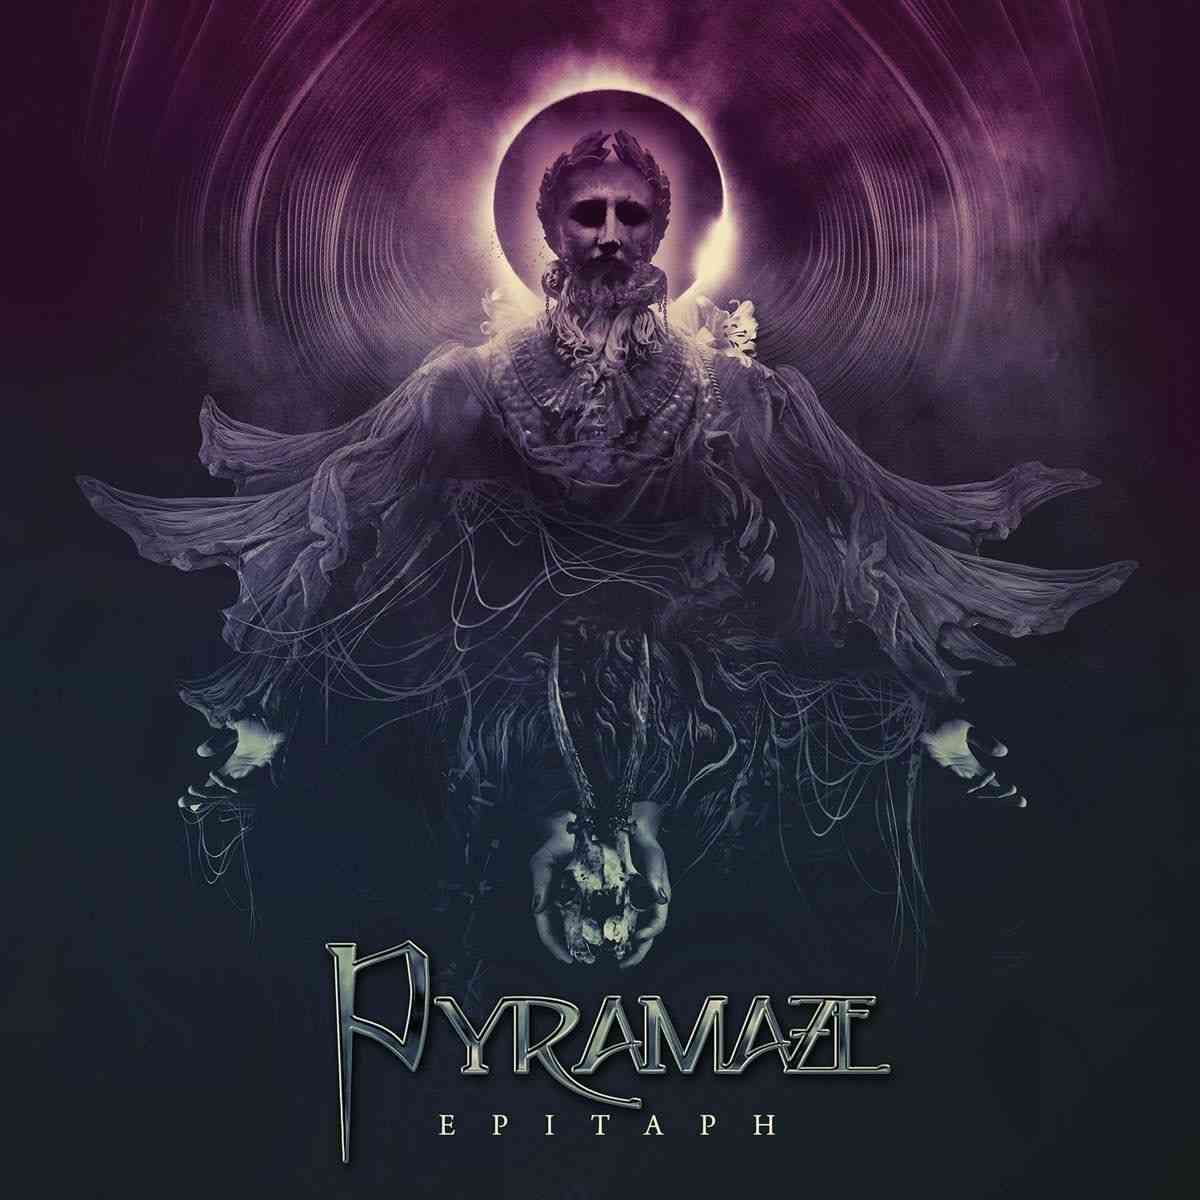 pyramaze - Epitaph - album cover